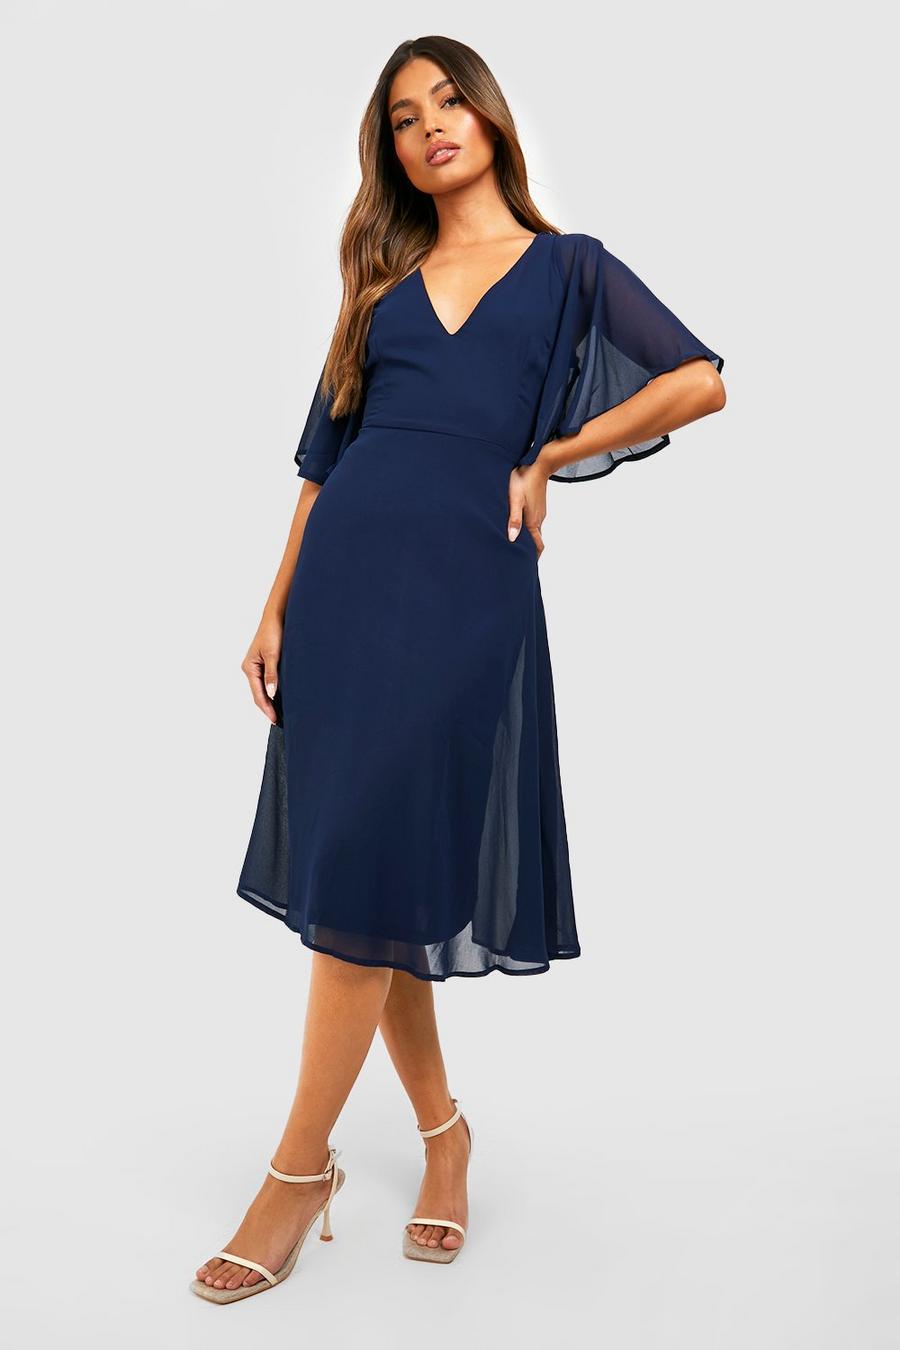 נייבי azul marino שמלת מידי סקייטר מבד שיפון לשושבינה עם שרוולי מלאך image number 1